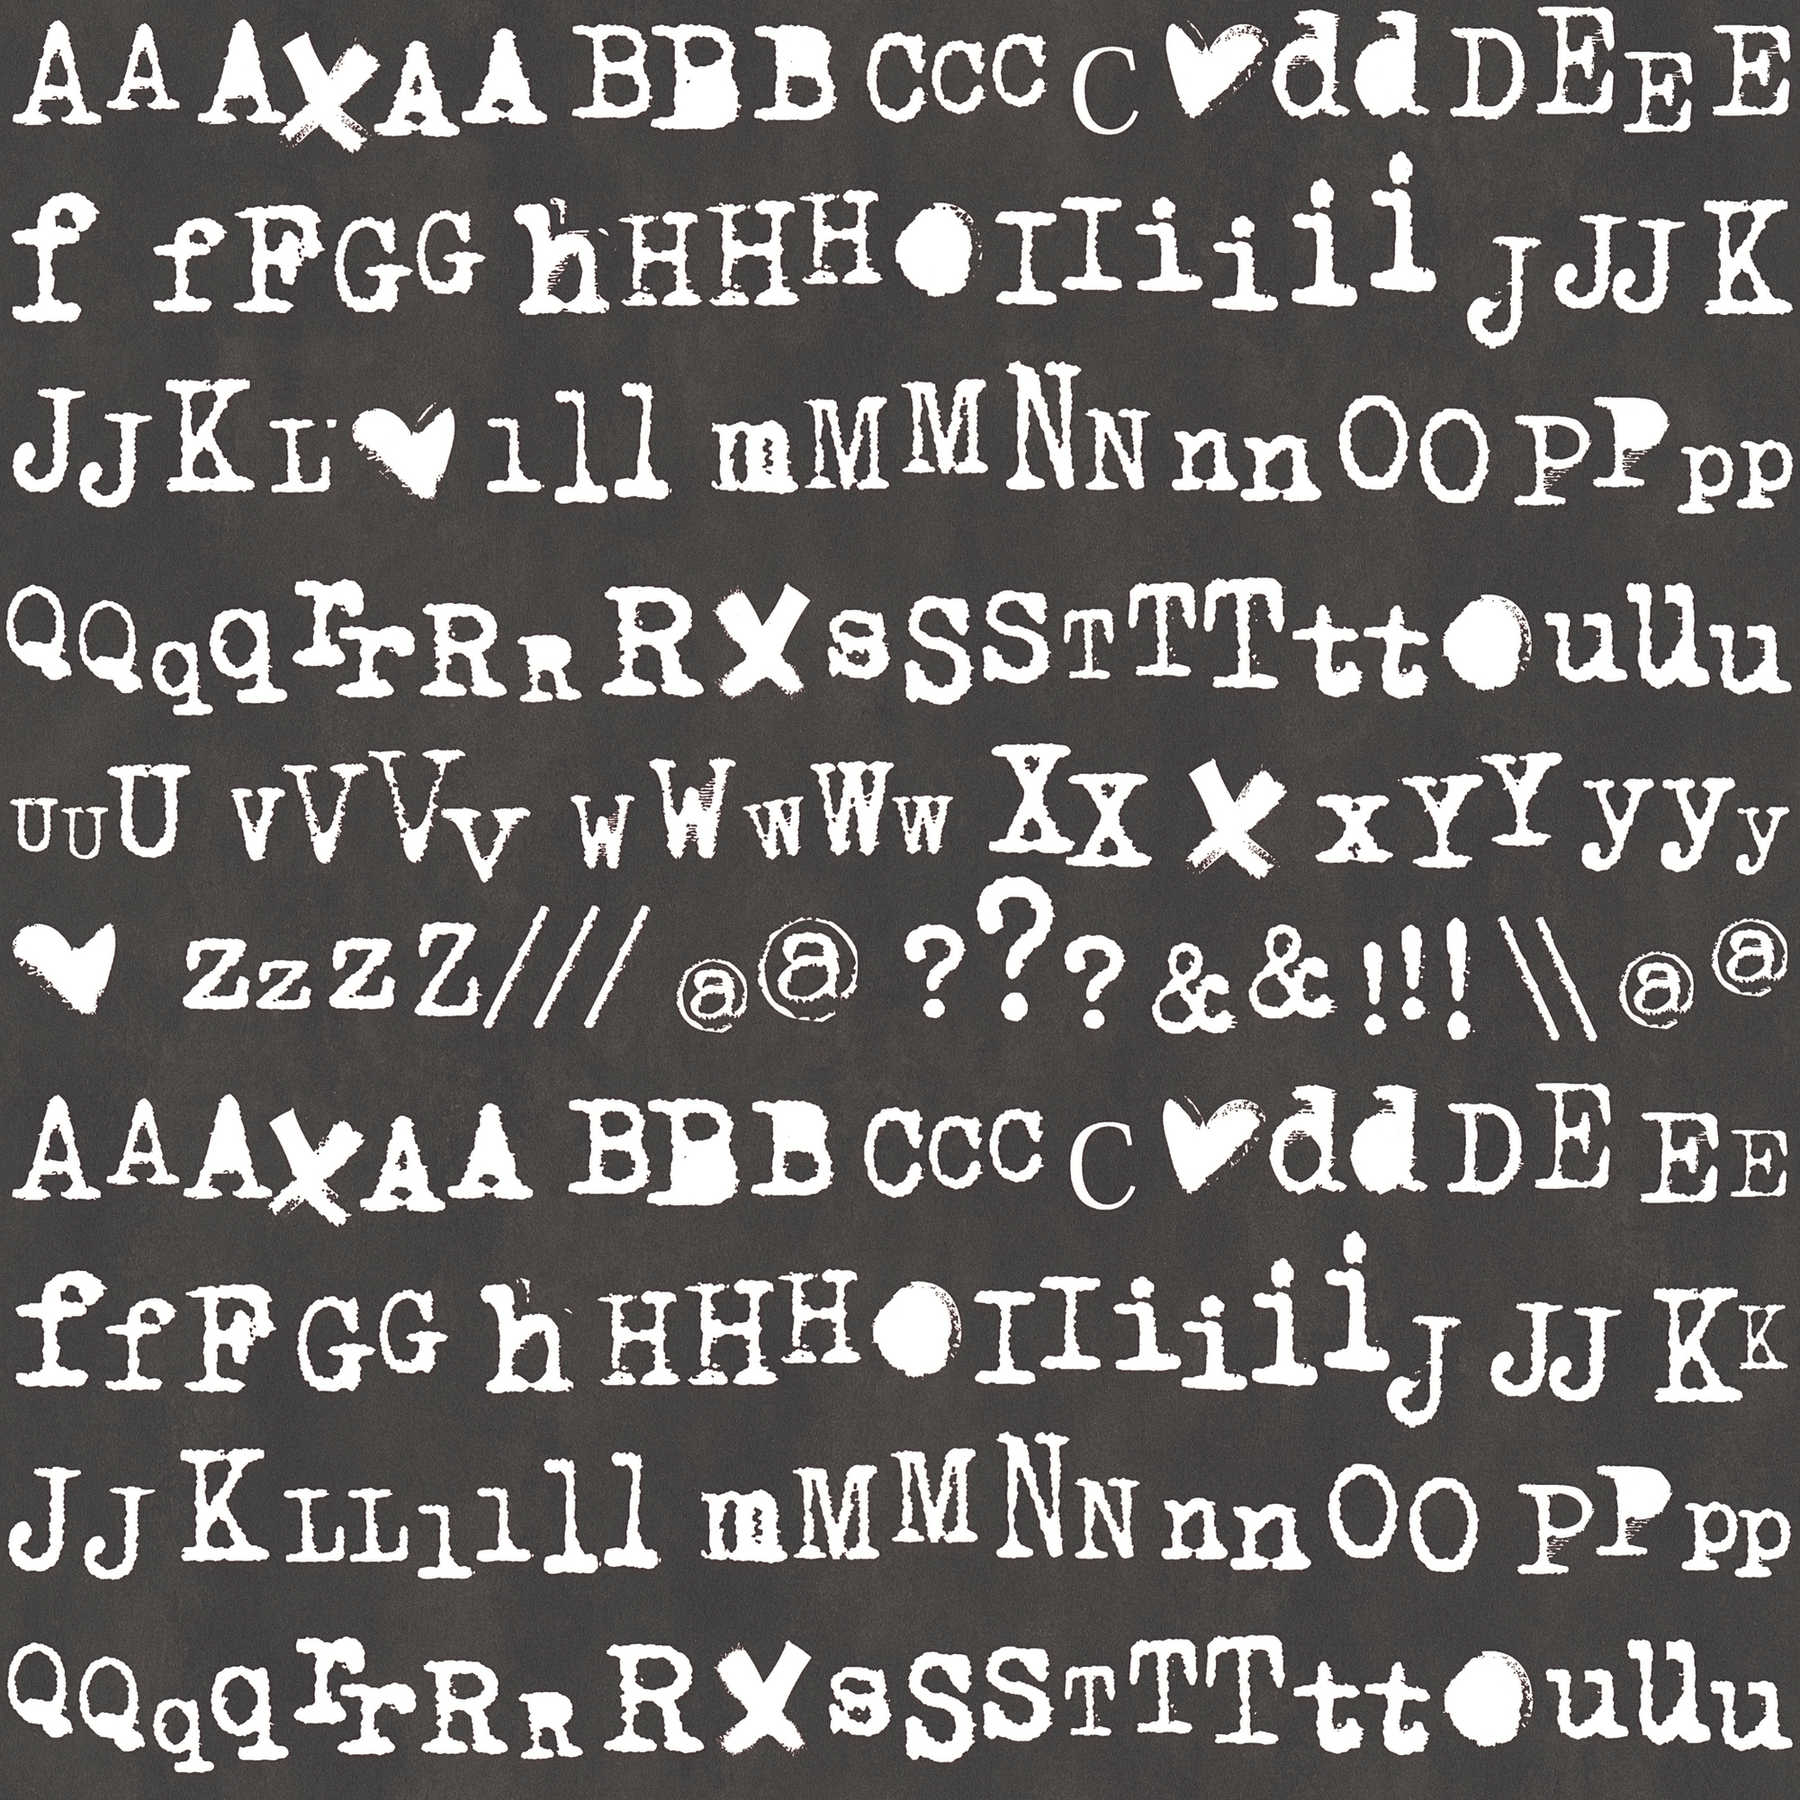         Schwarz-Weiß Tapete mit Lettern im Typografie Stil
    